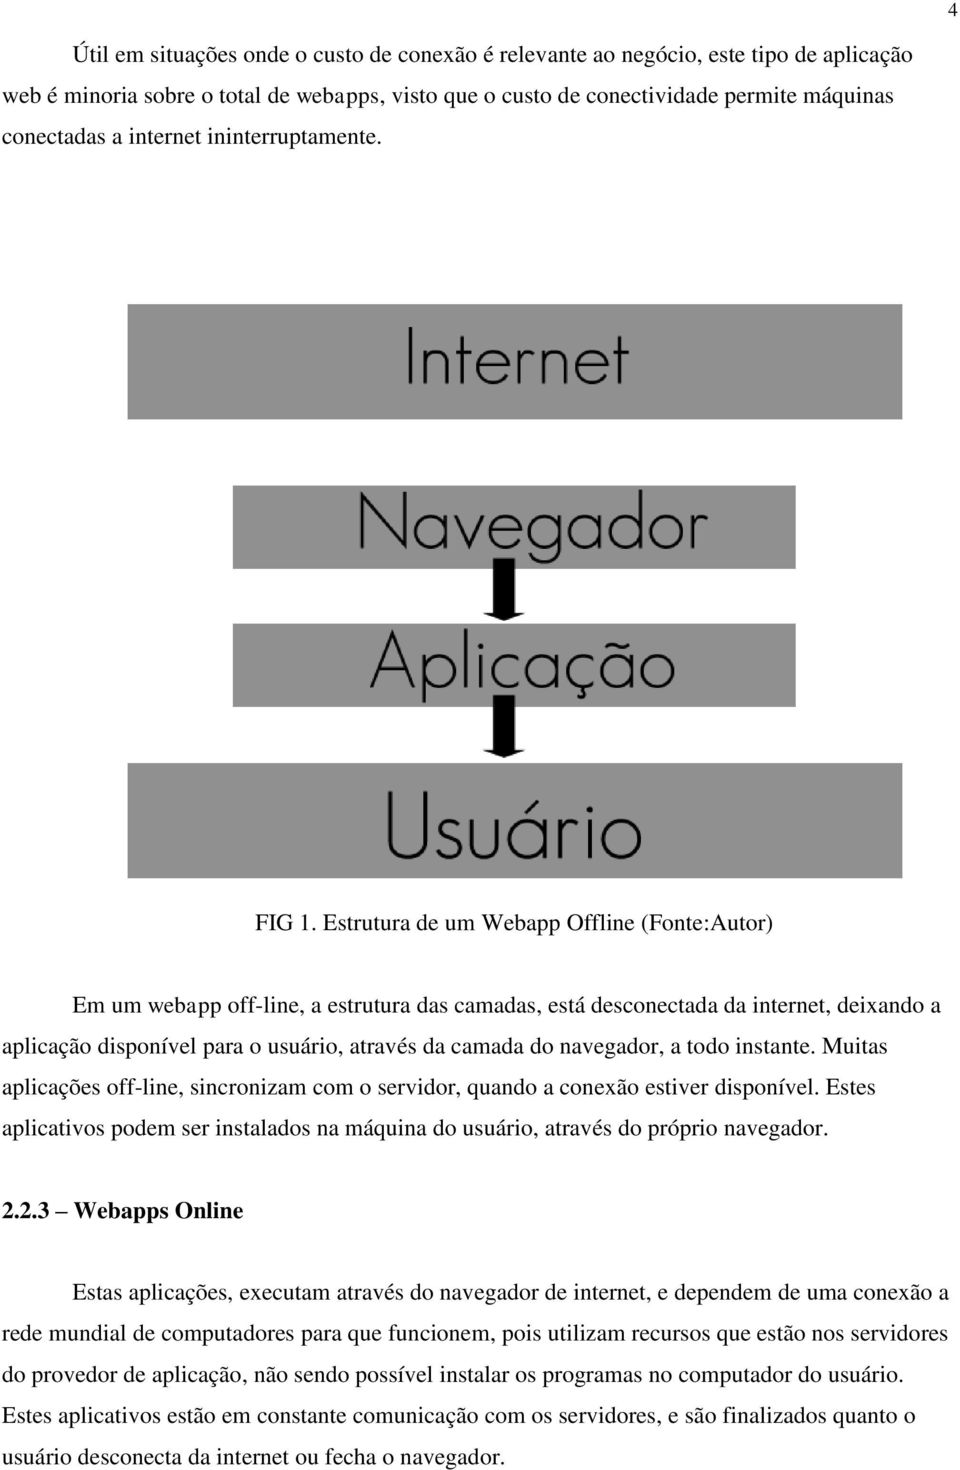 Estrutura de um Webapp Offline (Fonte:Autor) Em um webapp off-line, a estrutura das camadas, está desconectada da internet, deixando a aplicação disponível para o usuário, através da camada do